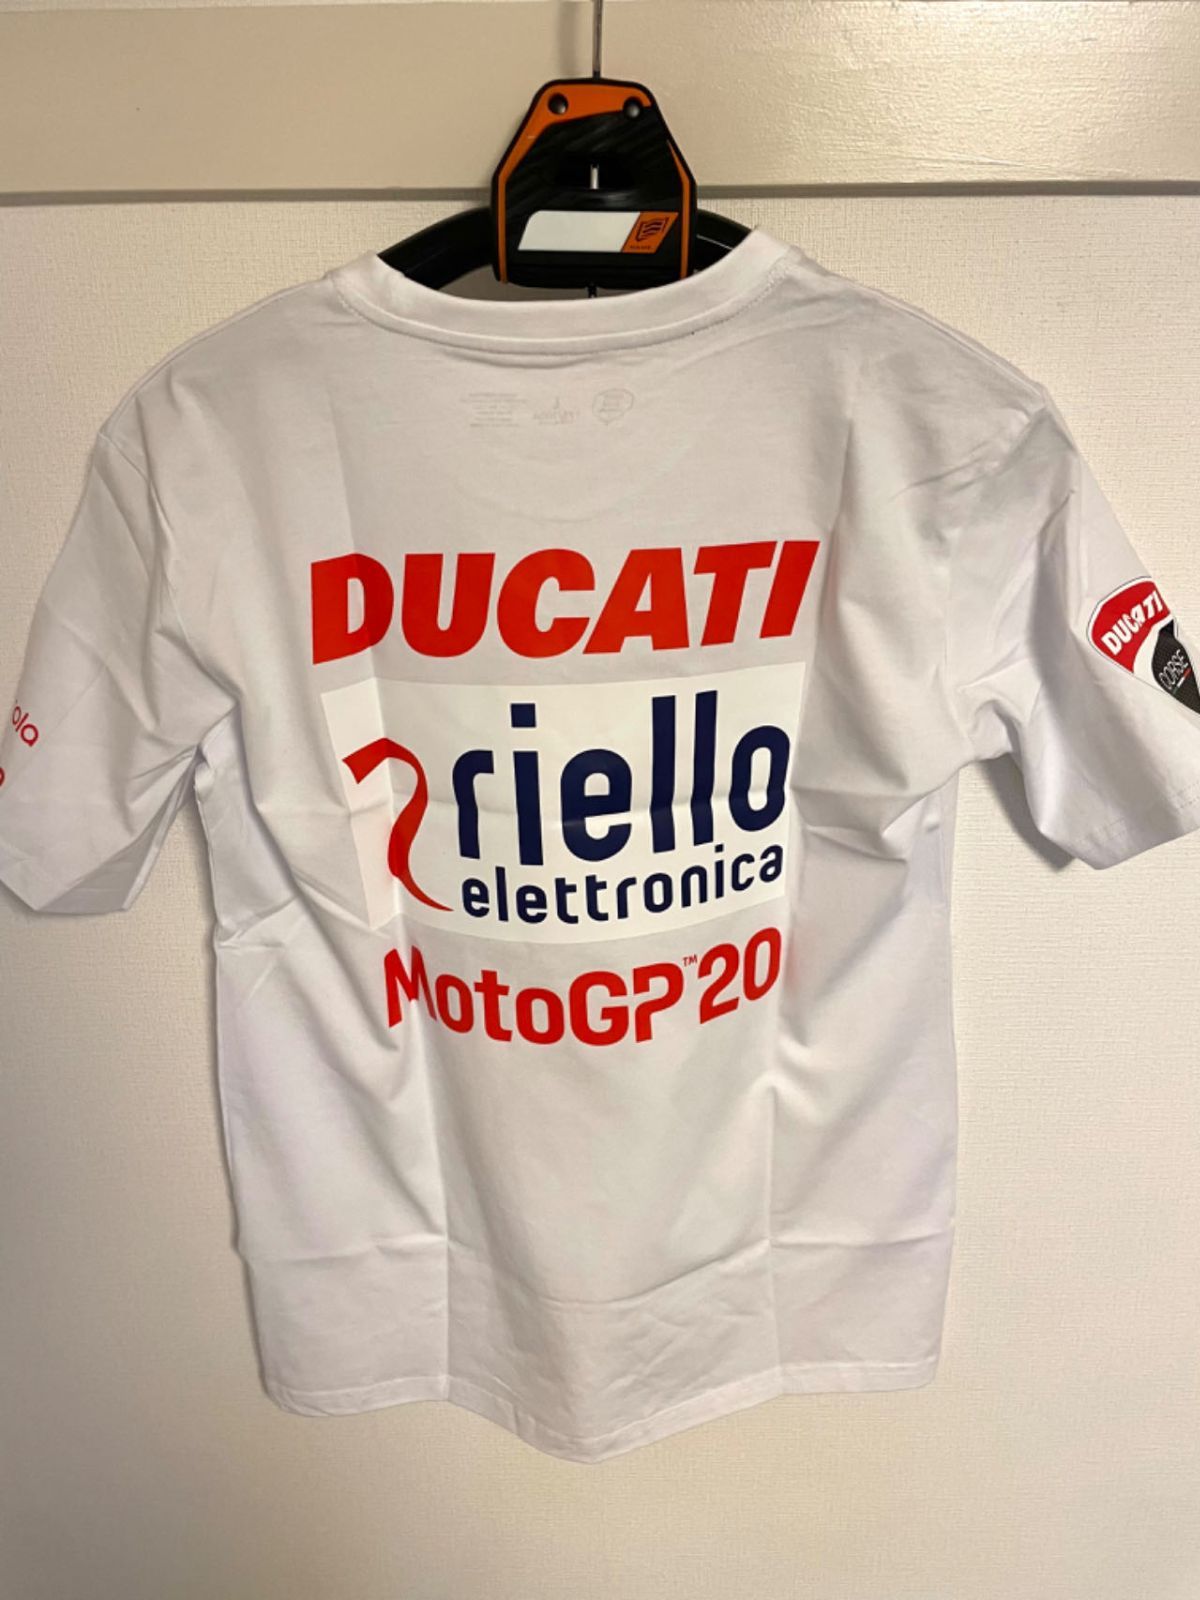 ☆アウトレットセール☆新品 L MotoGP RACING ドゥカティ Ducati T